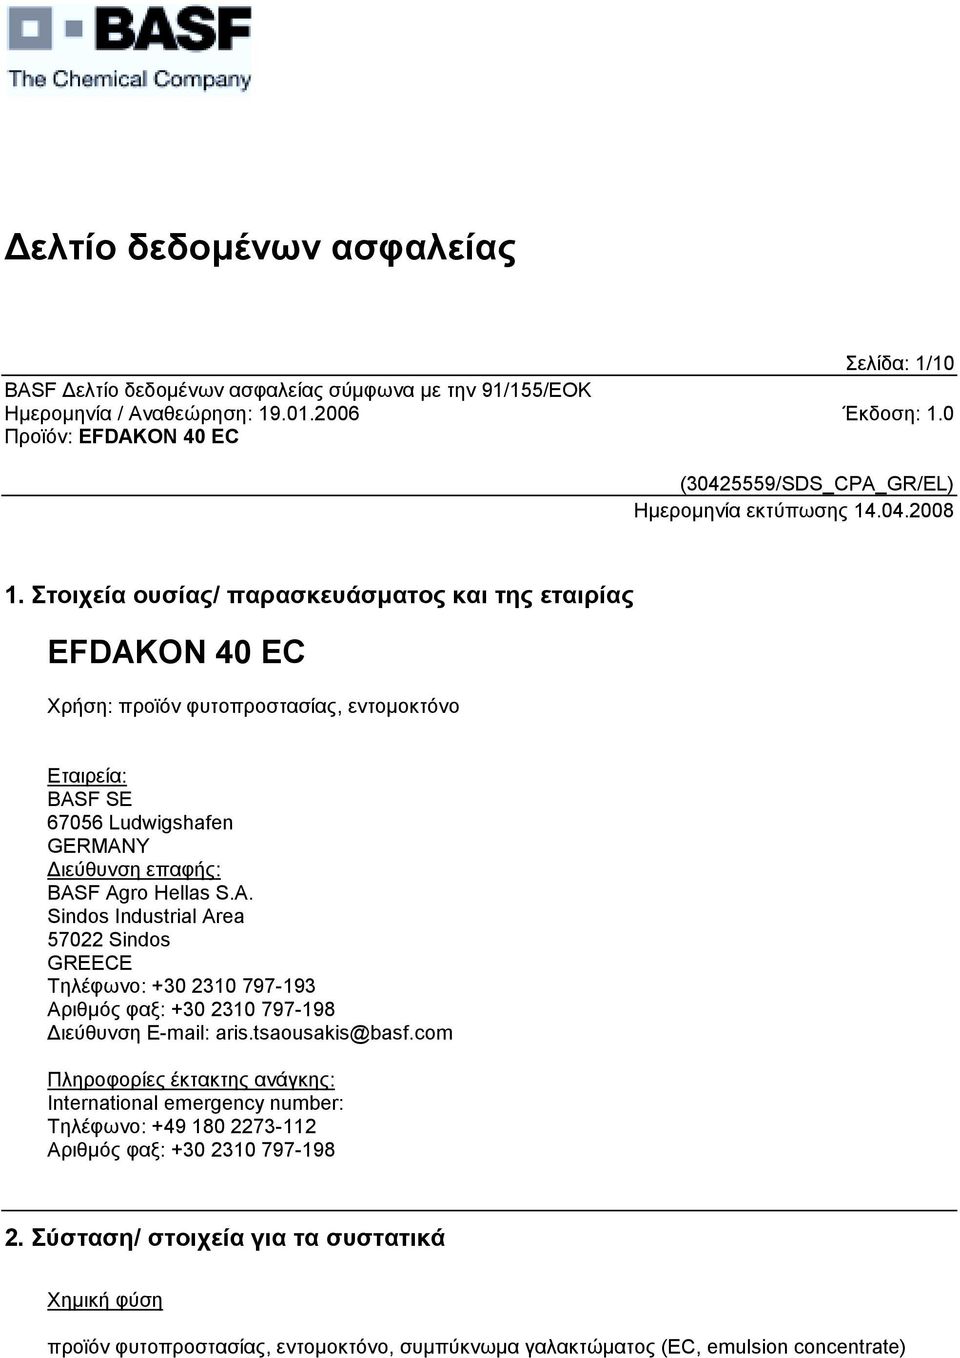 ιεύθυνση επαφής: BASF Agro Hellas S.A. Sindos Industrial Area 57022 Sindos GREECE Τηλέφωνο: +30 2310 797-193 Αριθµός φαξ: +30 2310 797-198 ιεύθυνση E-mail: aris.